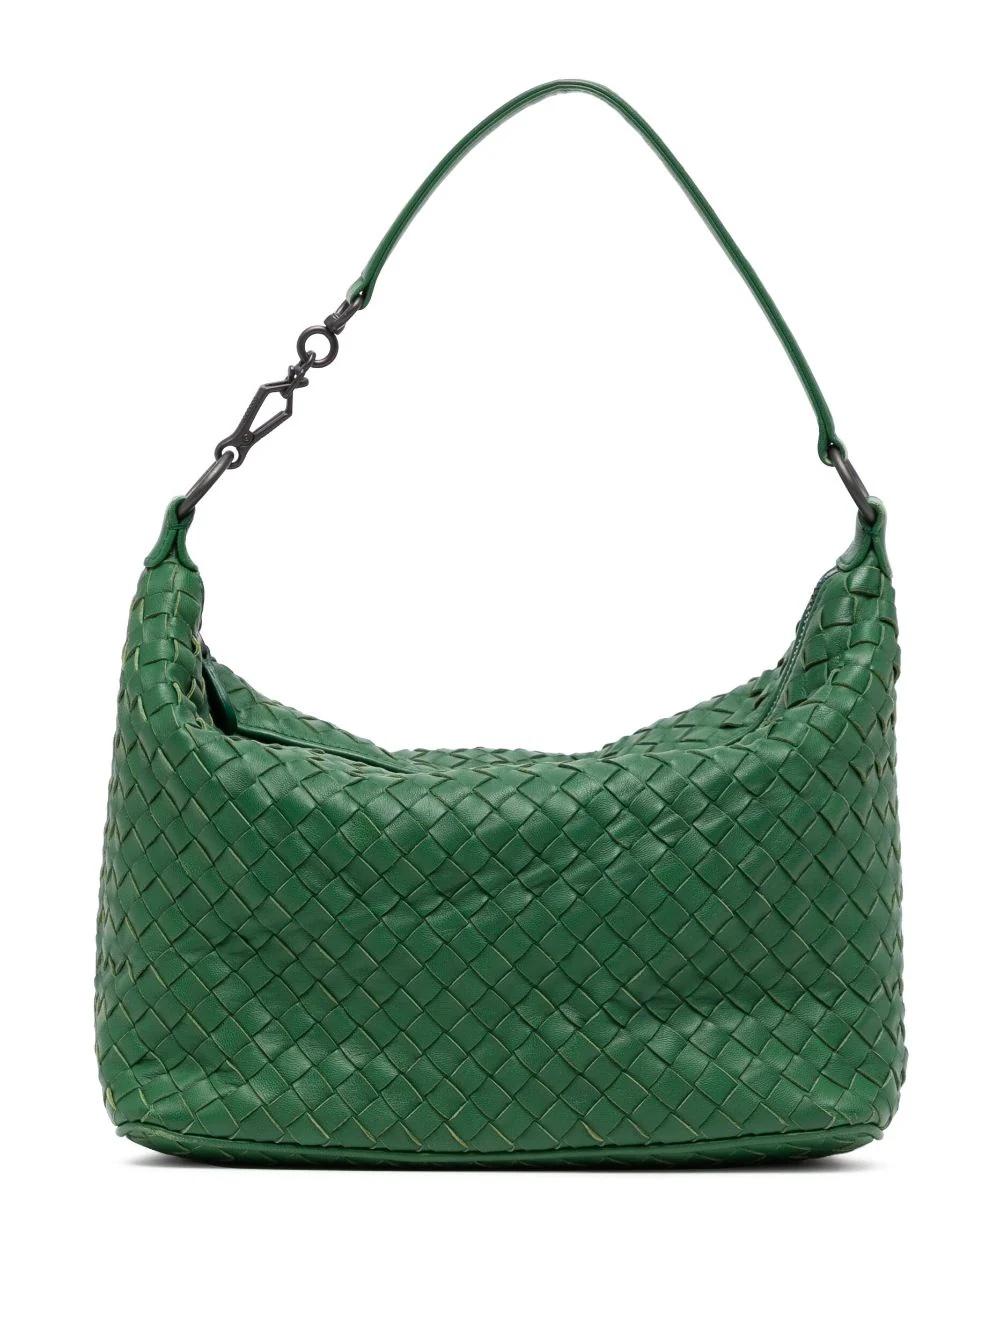 Women's or Men's Bottega Veneta Intrecciato Green Handbag